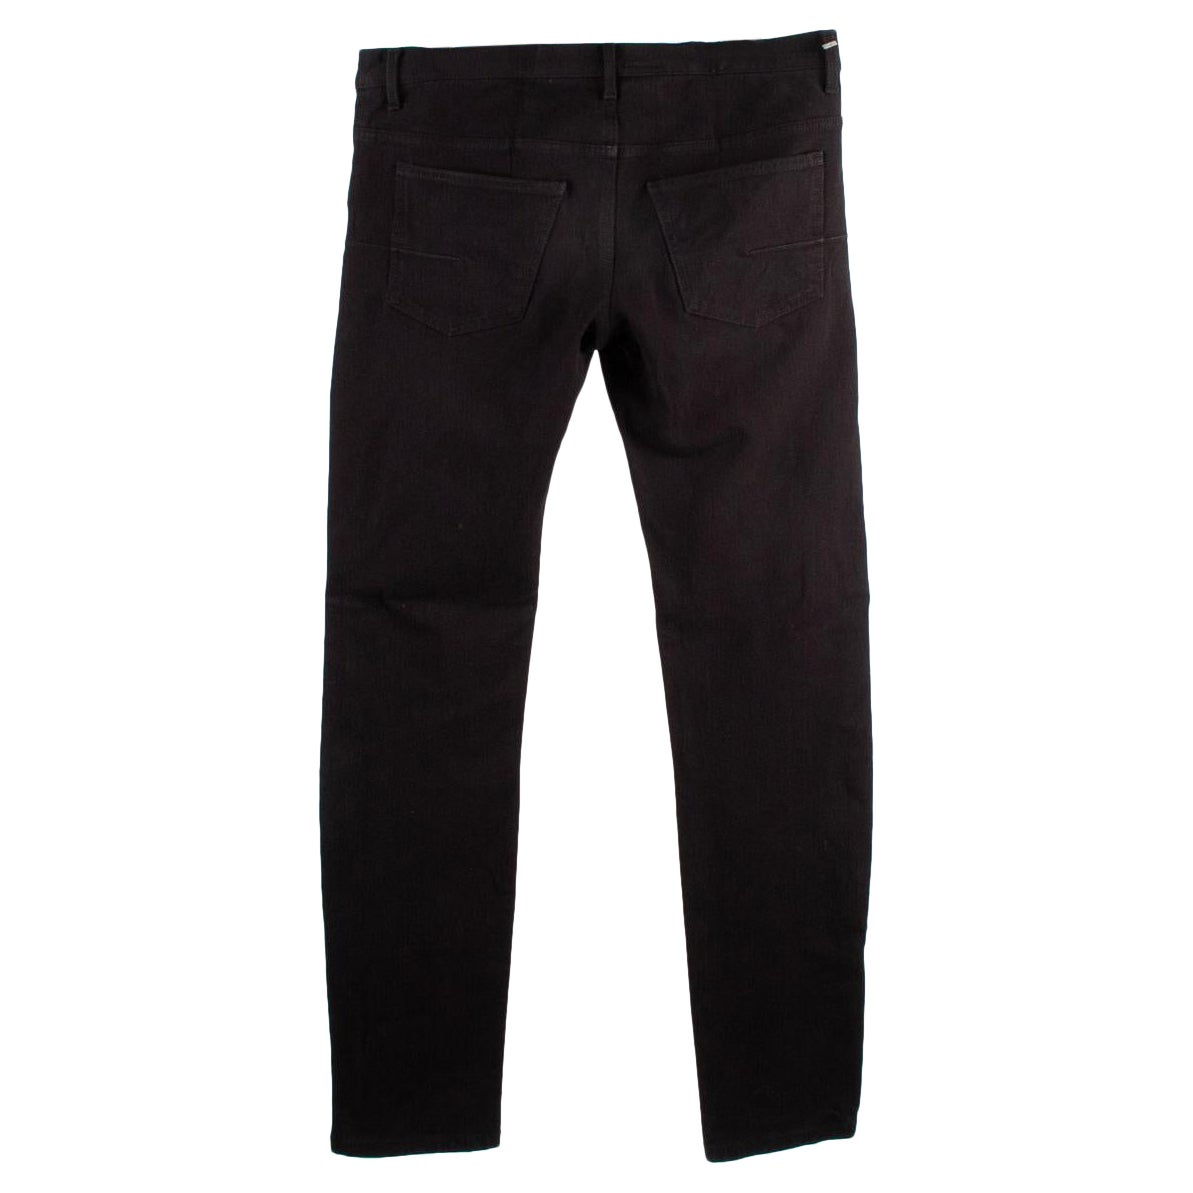 Dior Homme Men Black Jeans Pants Size 34, S520